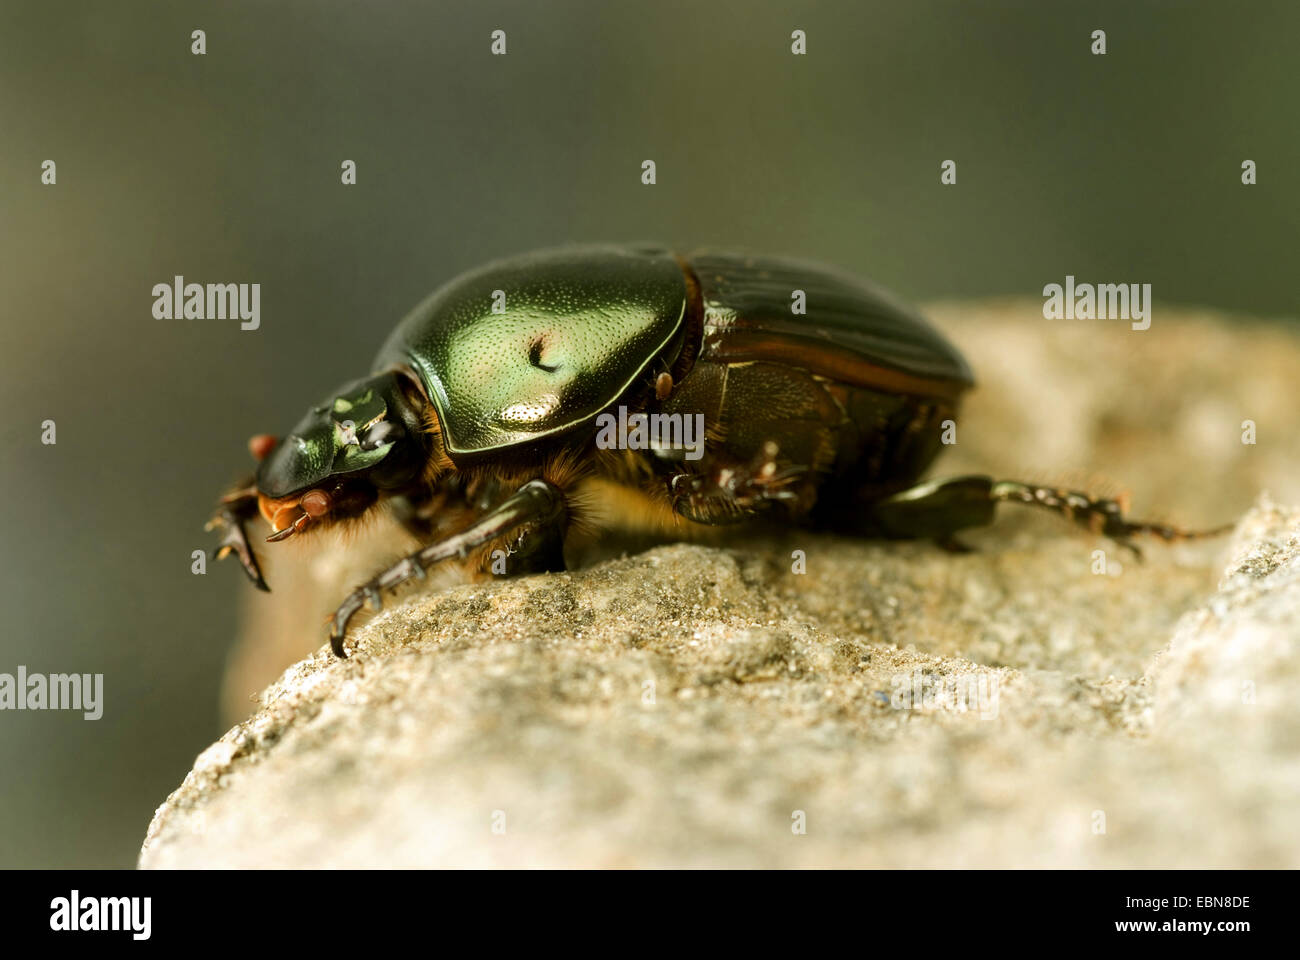 Sacred scarab beetle, Egyptian scarab (Scarabaeus sacer), side view Stock Photo